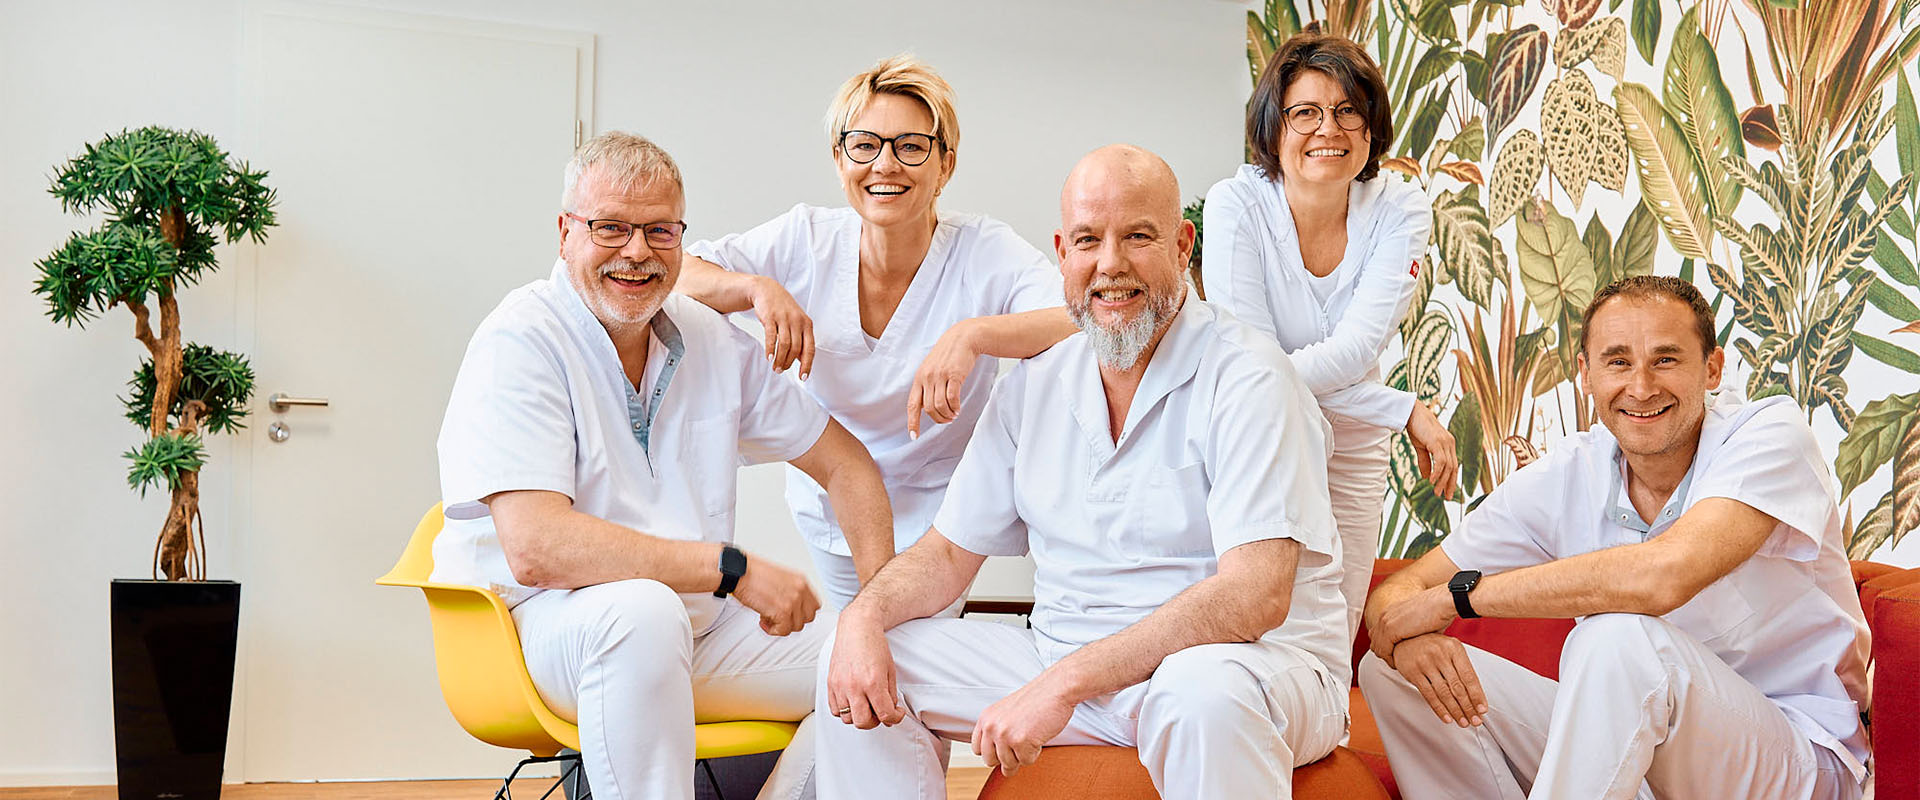 Zahnarztpraxis Pfau in Rottweil: Teambild der Zahntechniker, drei Männer und zwei Frauen in weißer Kleidung